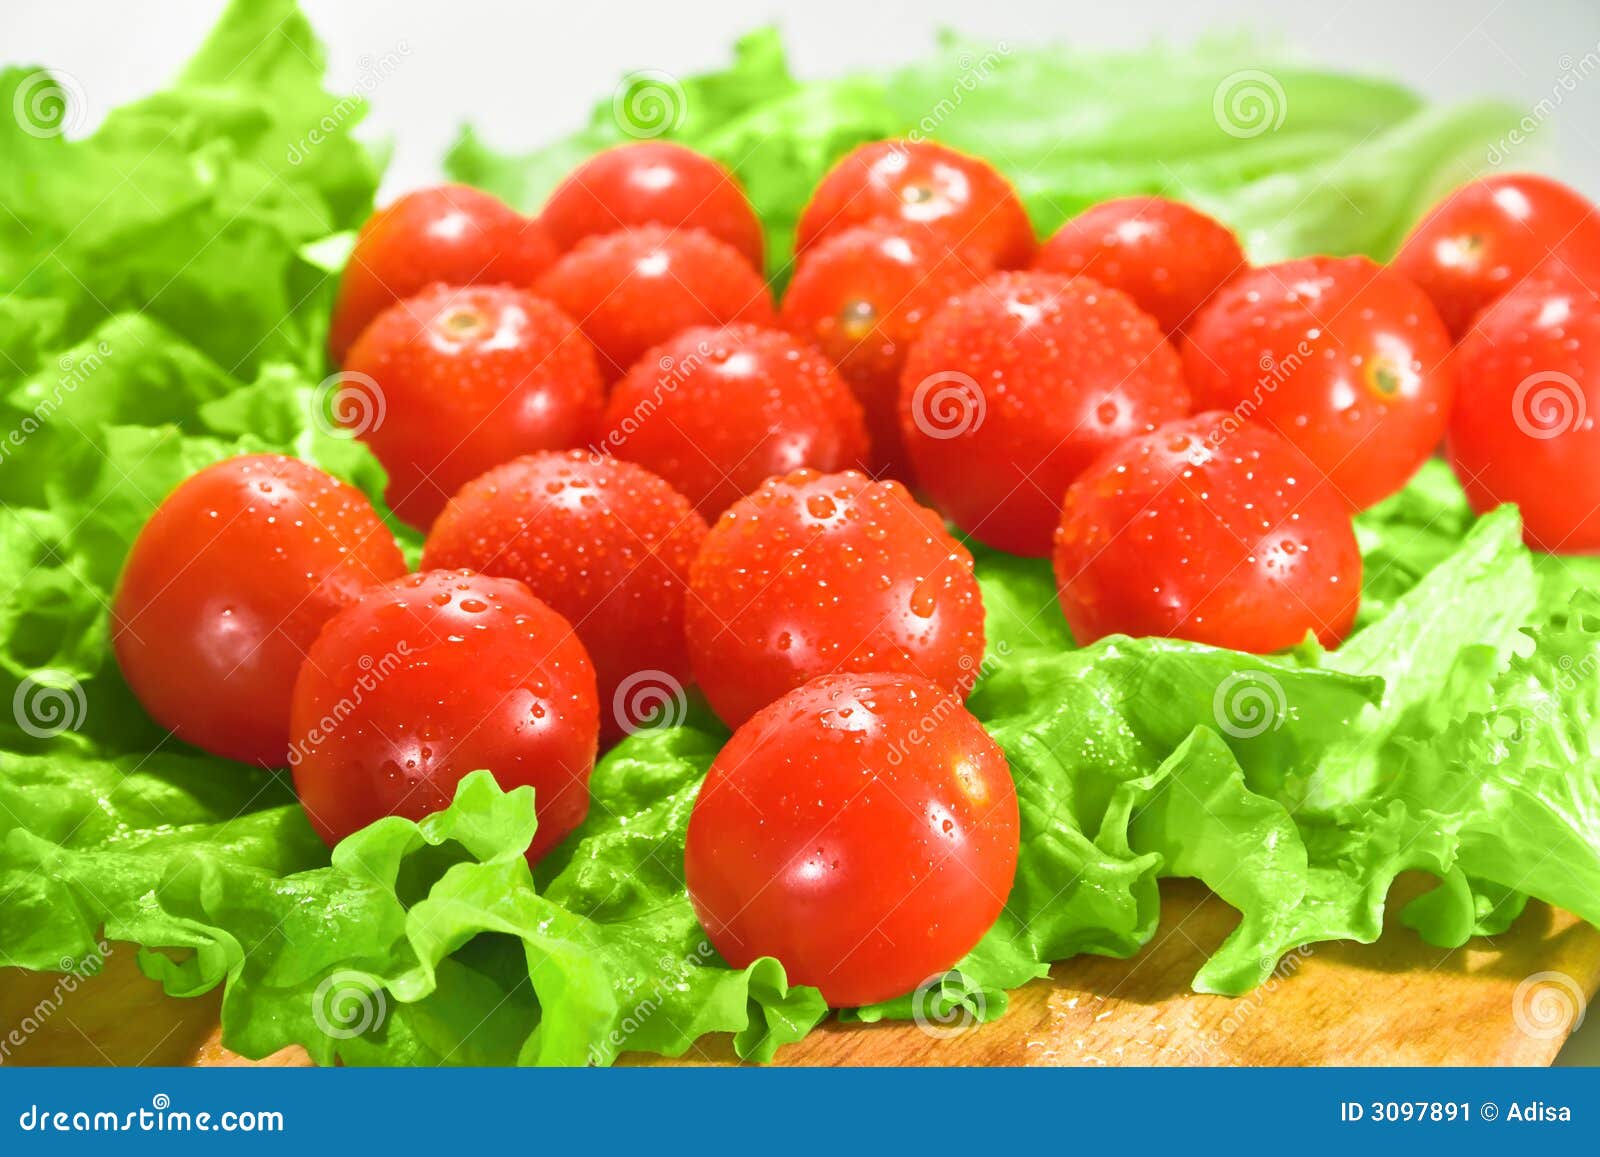 Roos leren woede Tomaten en sla stock afbeelding. Image of koken, rijp - 3097891